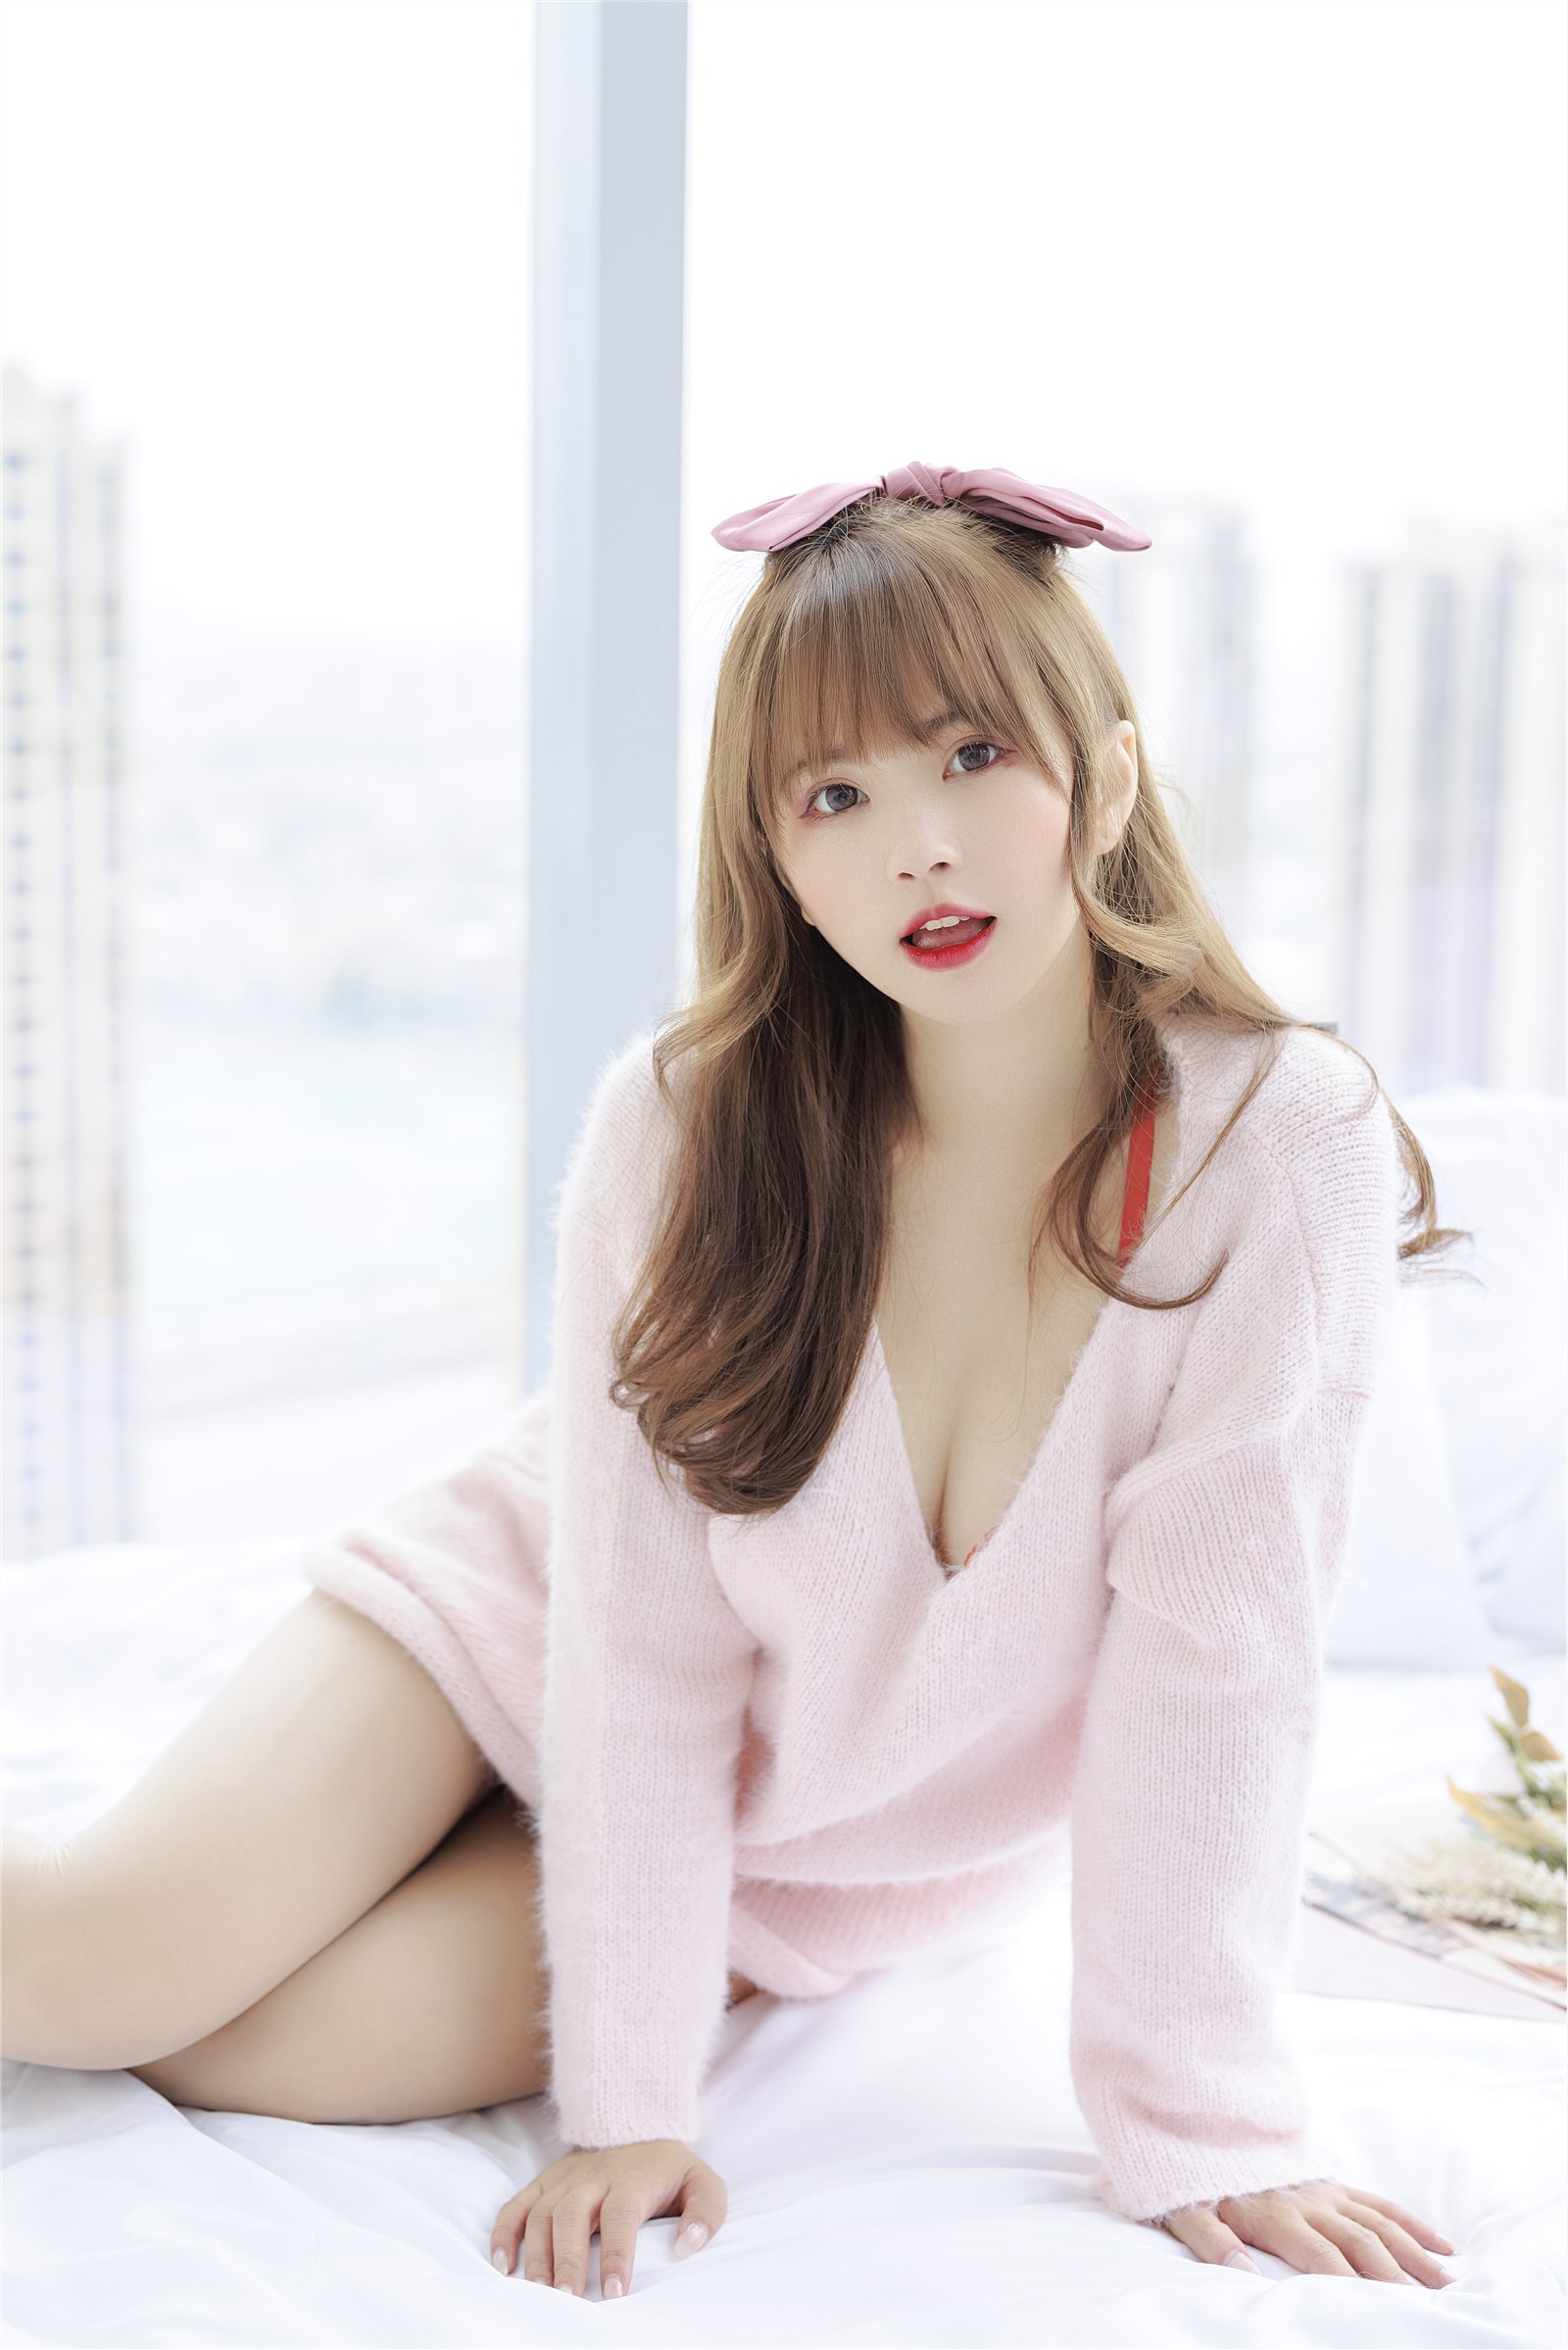 002. Zhang Siyun Nice - Internal purchase of watermark free pink sweater(8)